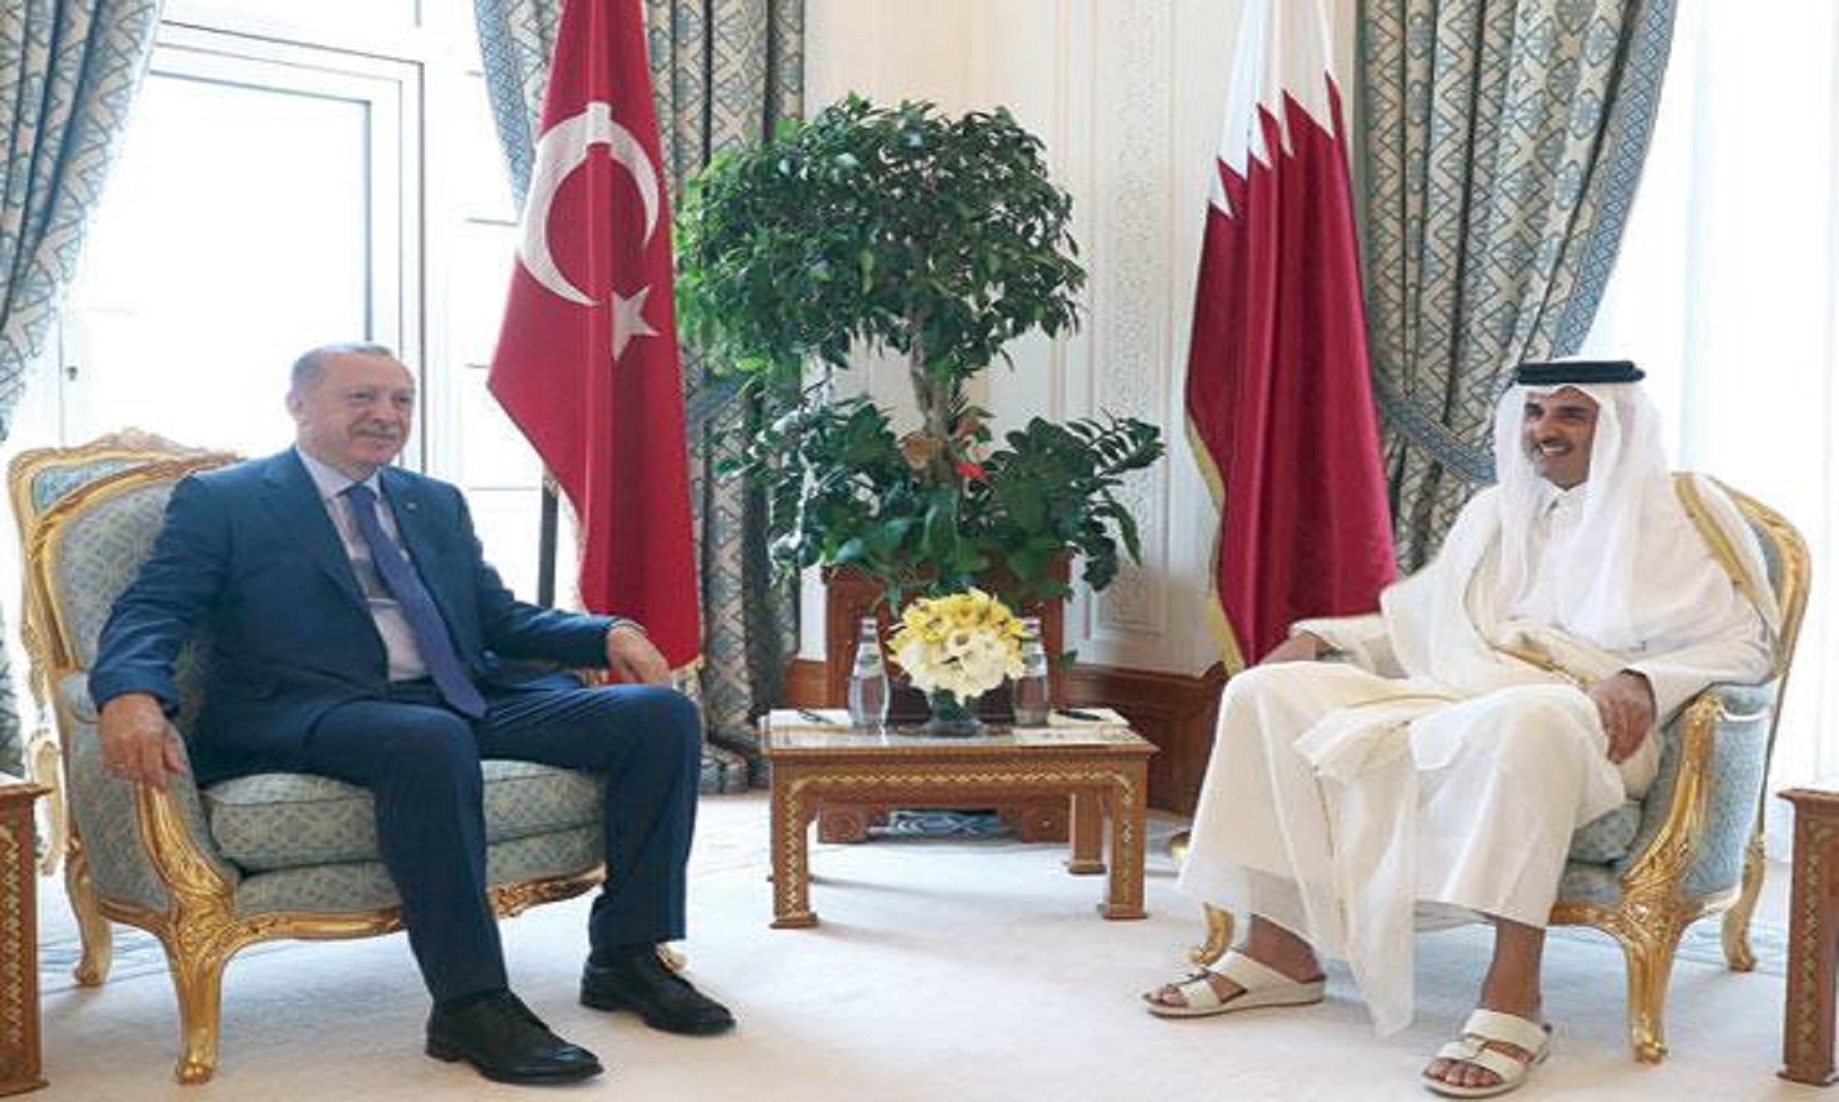 Turkey’s Erdogan In Qatar On First Arab Trip Since Syria Campaign